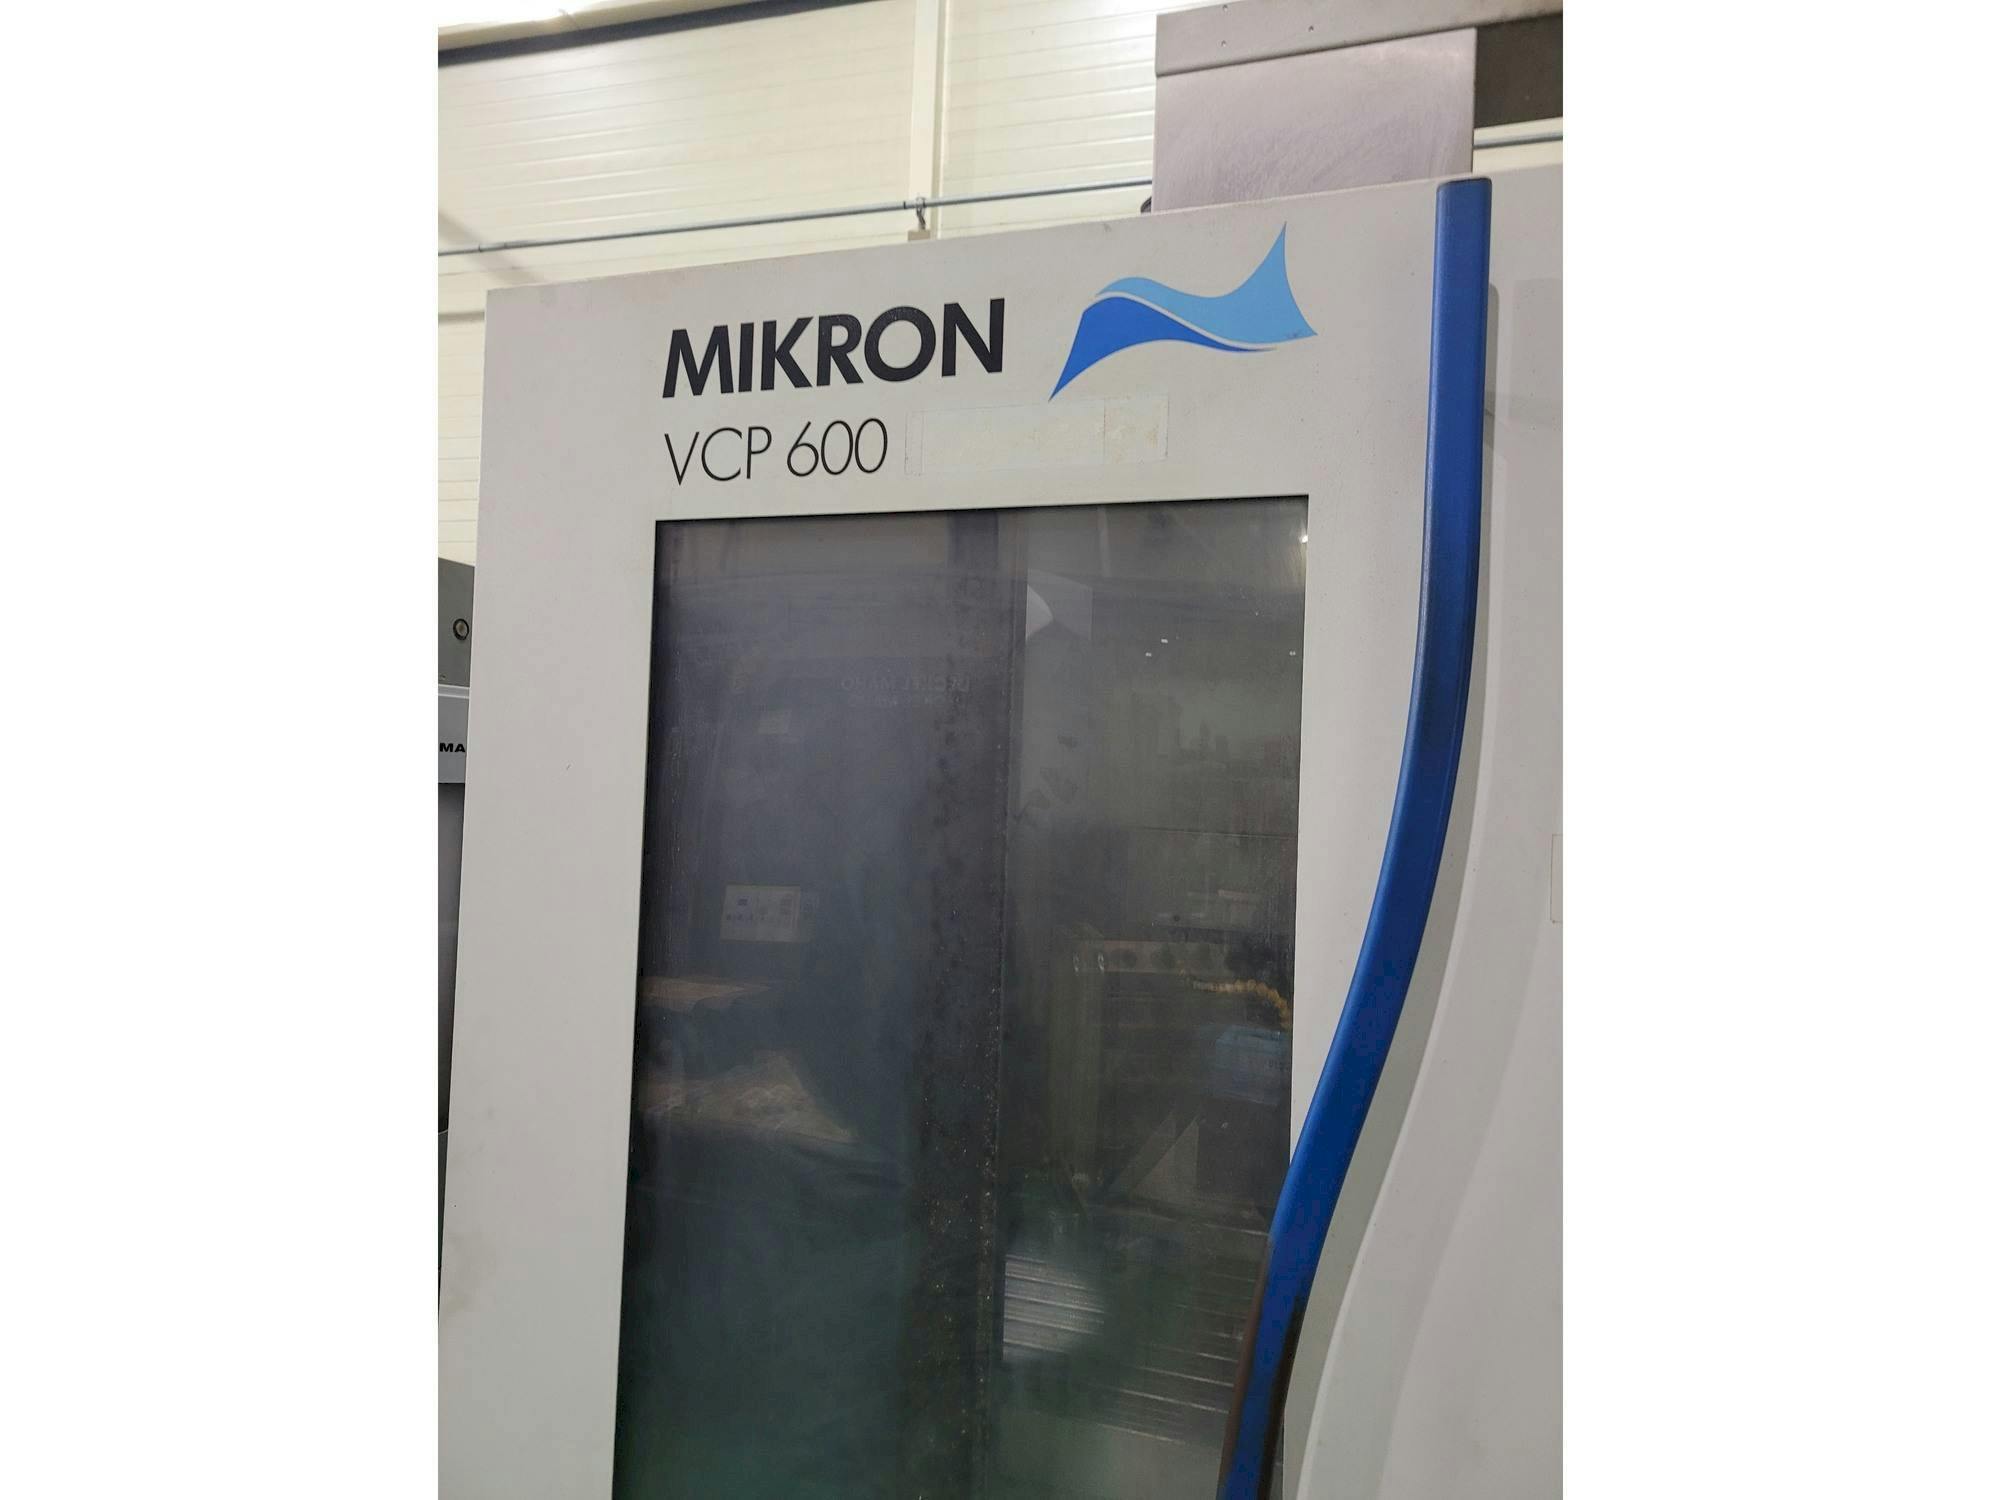 Vista frontale della macchina MIKRON VCP 600